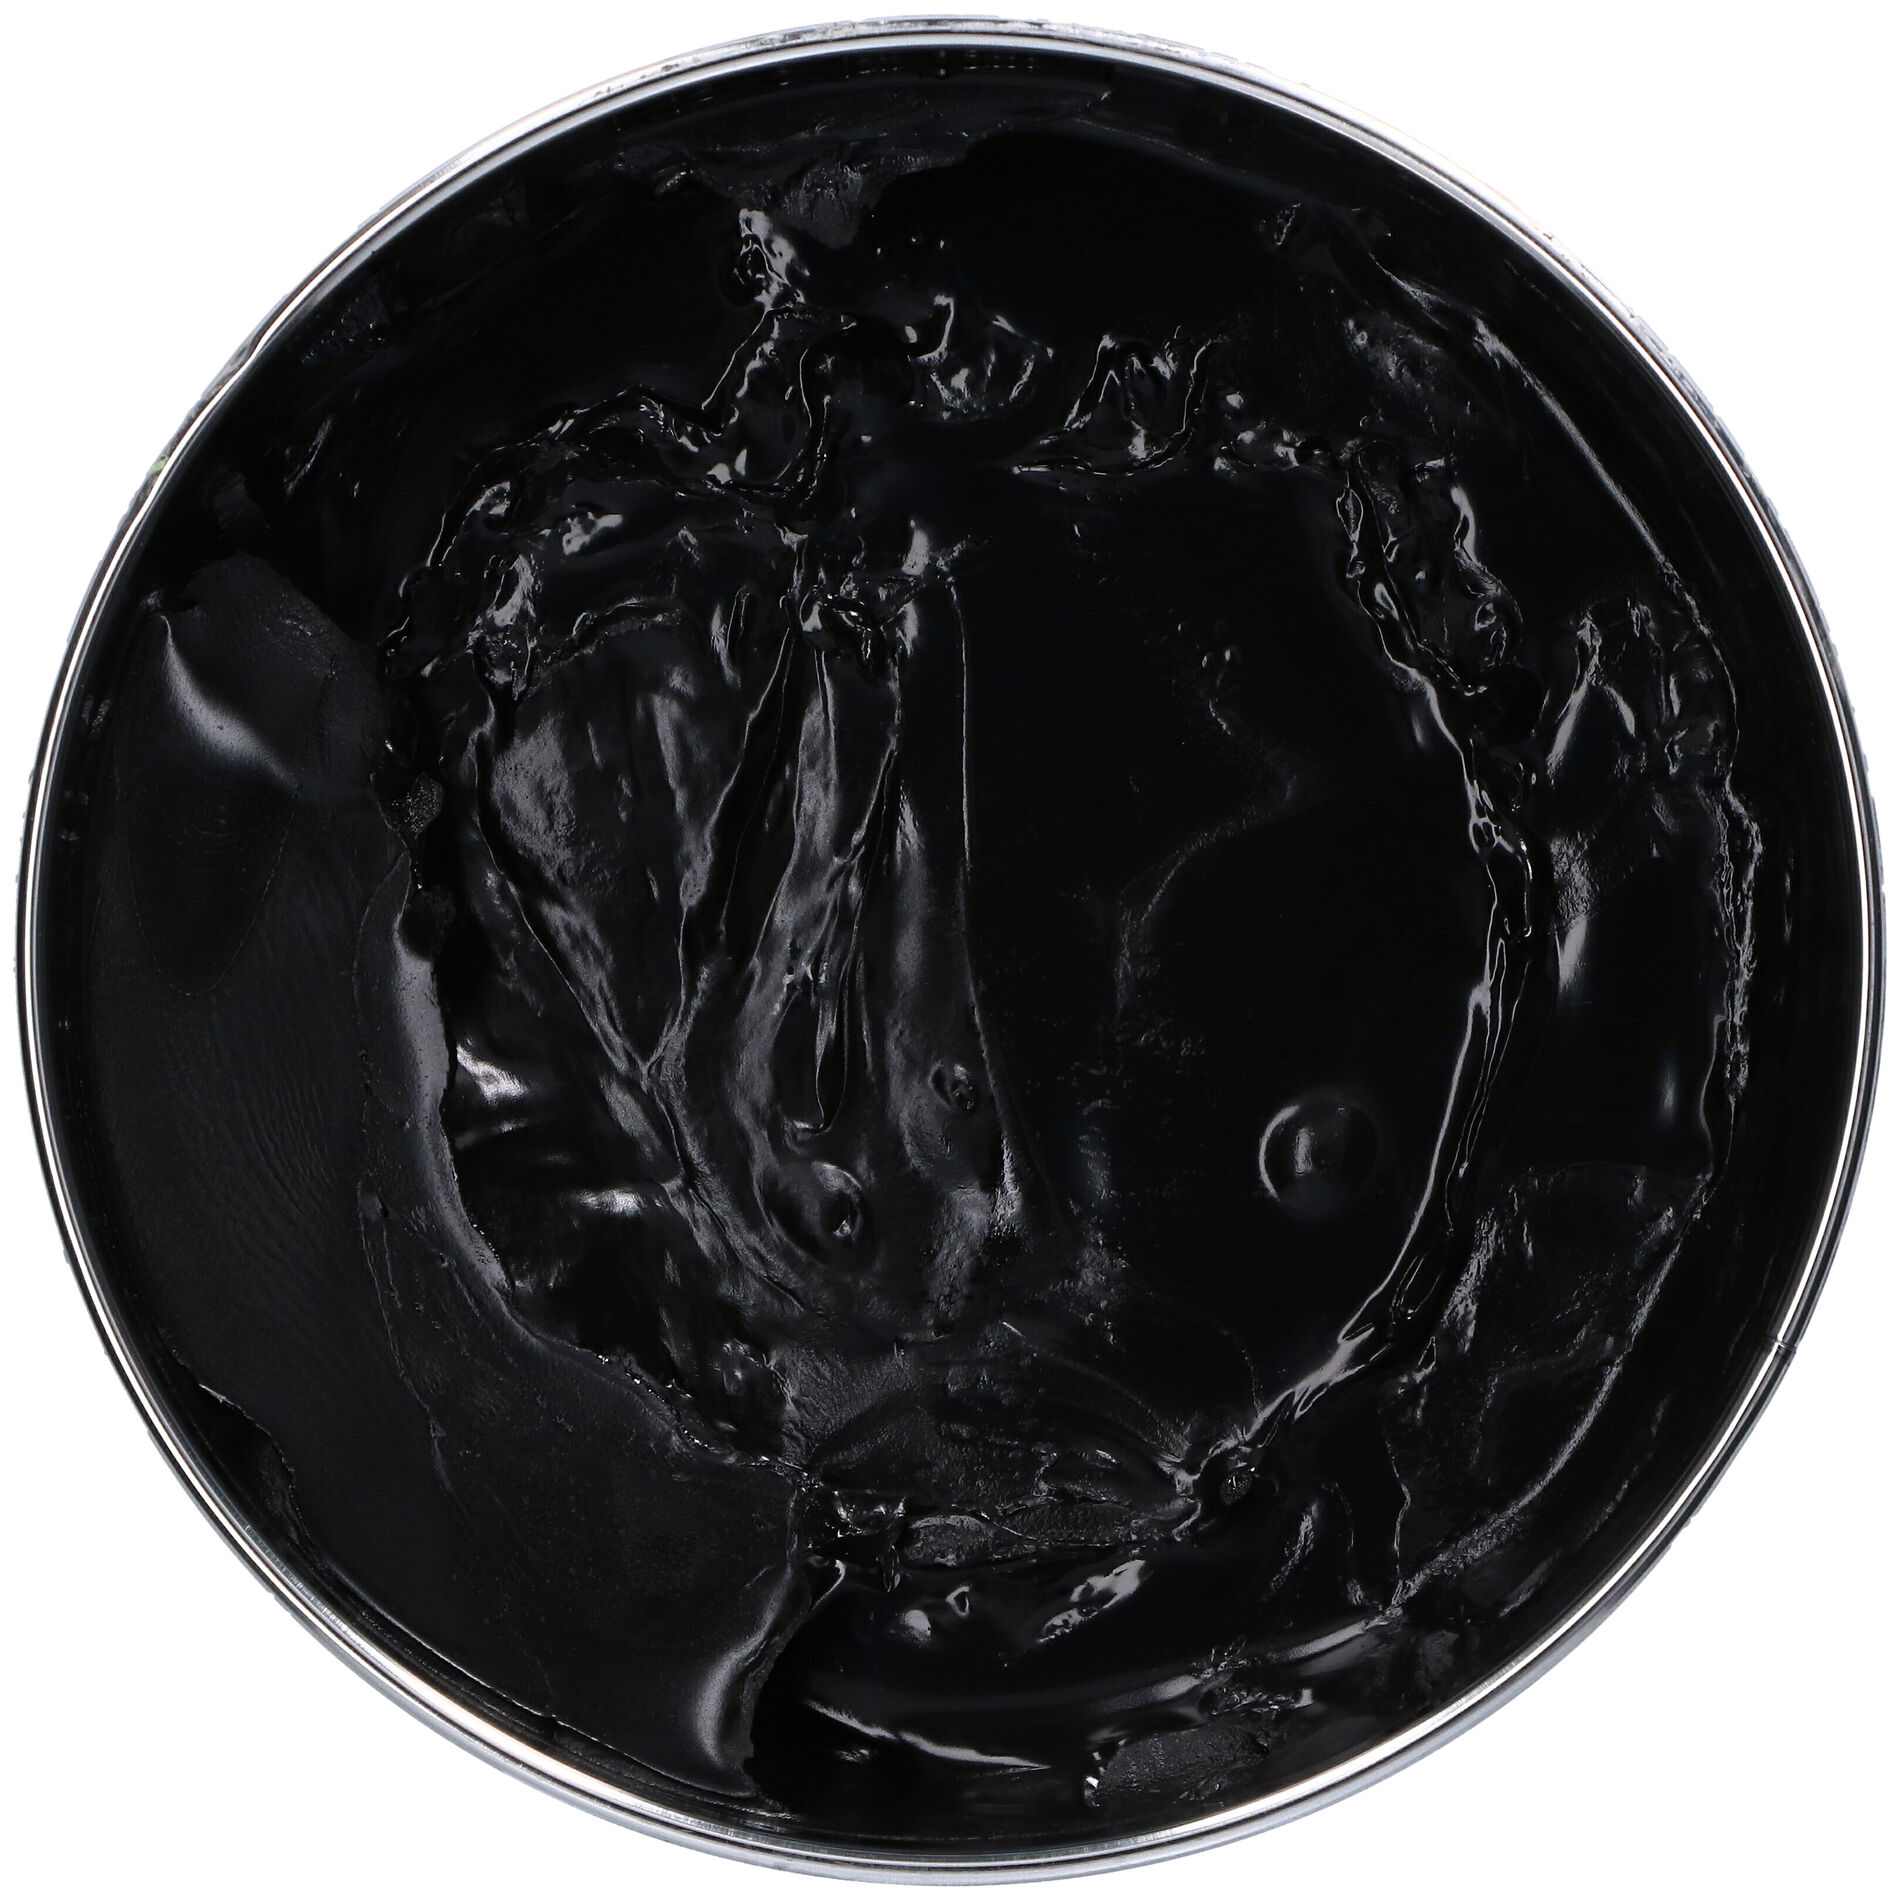 PACK Mastic Noir] Mastic Noir + Chalumeau + Recharge gaz + scotch